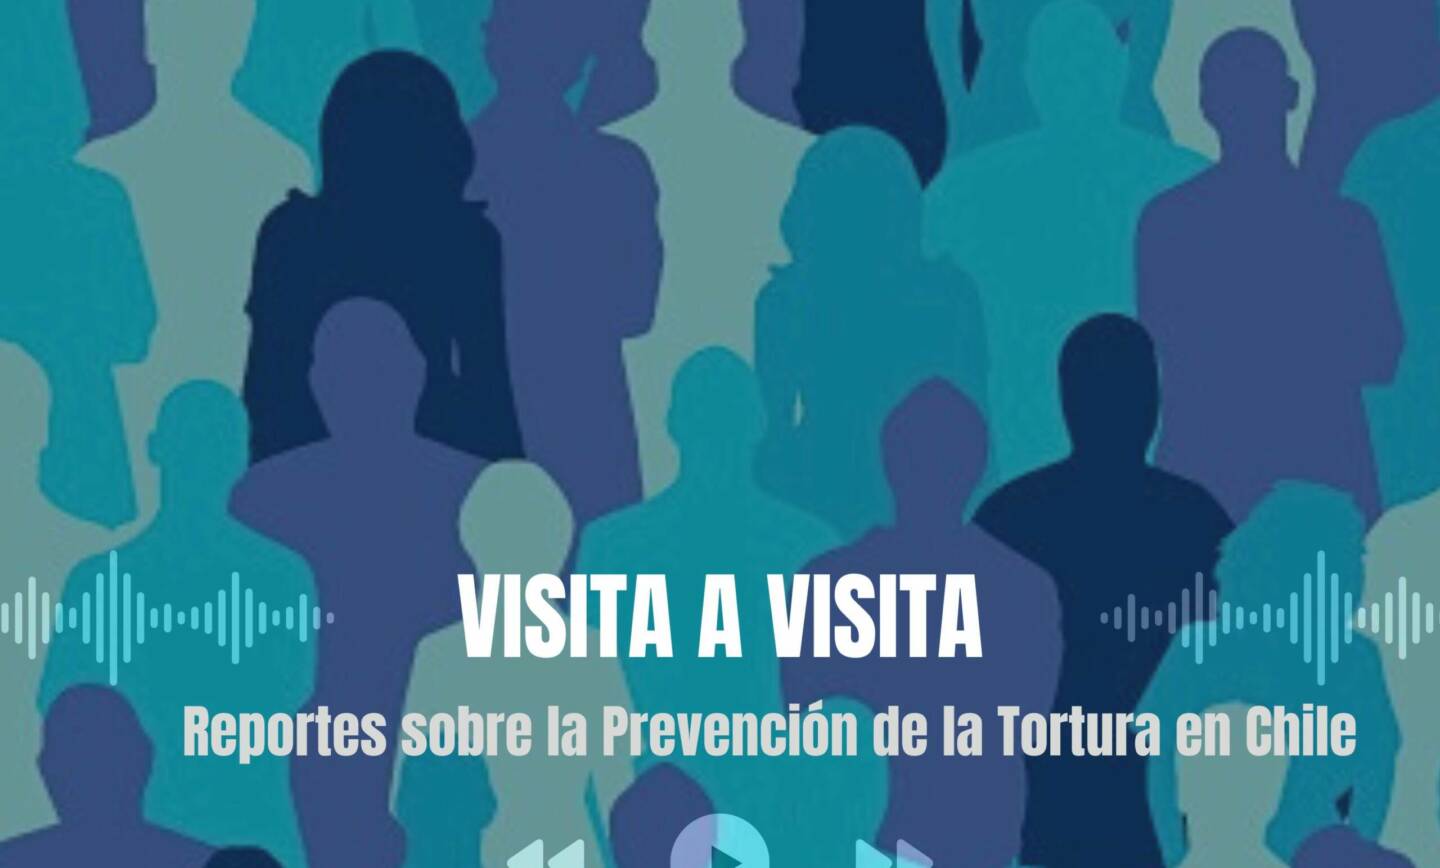 Comité para la Prevención de la Tortura estrenó su podcast en Spotify: “CPT – Visita a Visita: Reportes sobre la Prevención de la Tortura en Chile” 